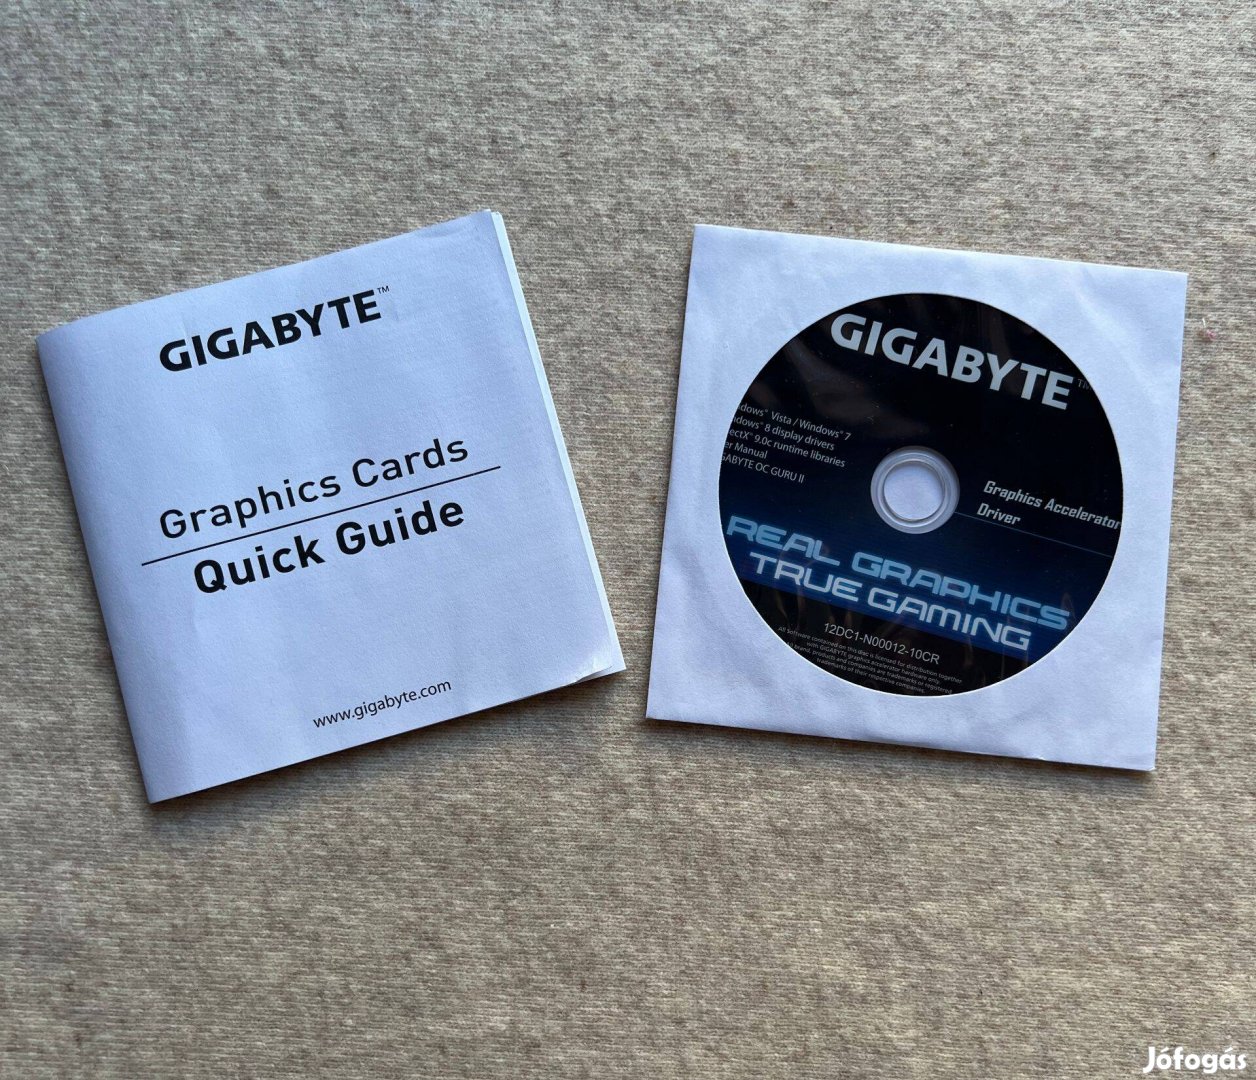 Gigabyte Graphics Accelerator Driver CD